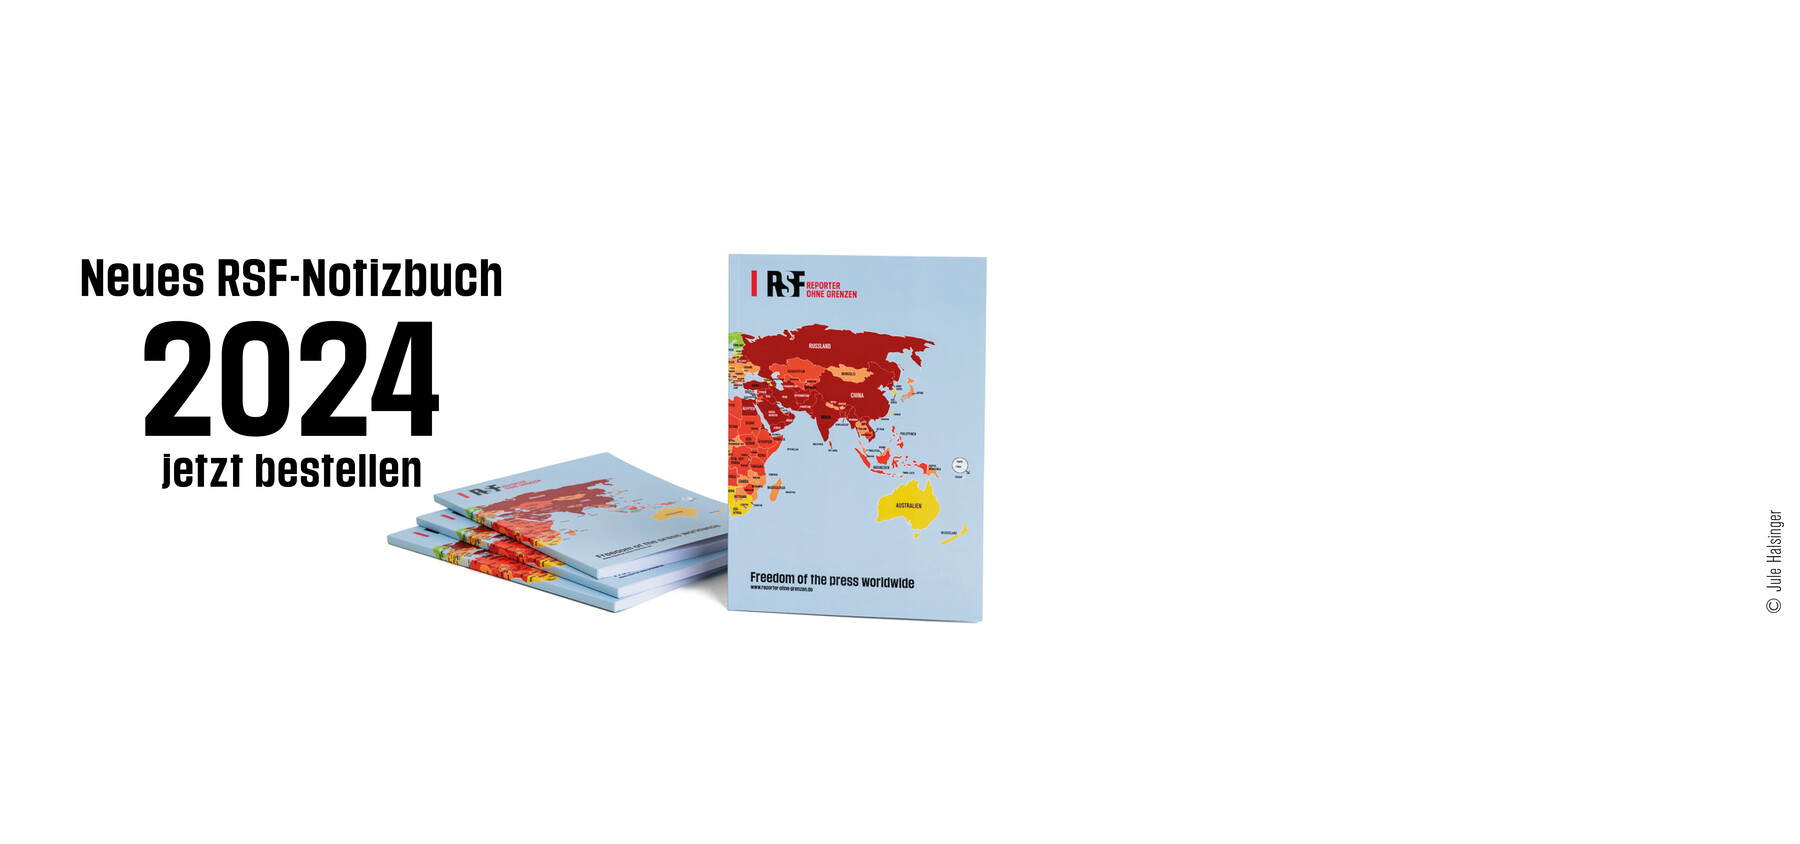 Notizbuch mit RSF-Weltkarte der Pressefreiheit